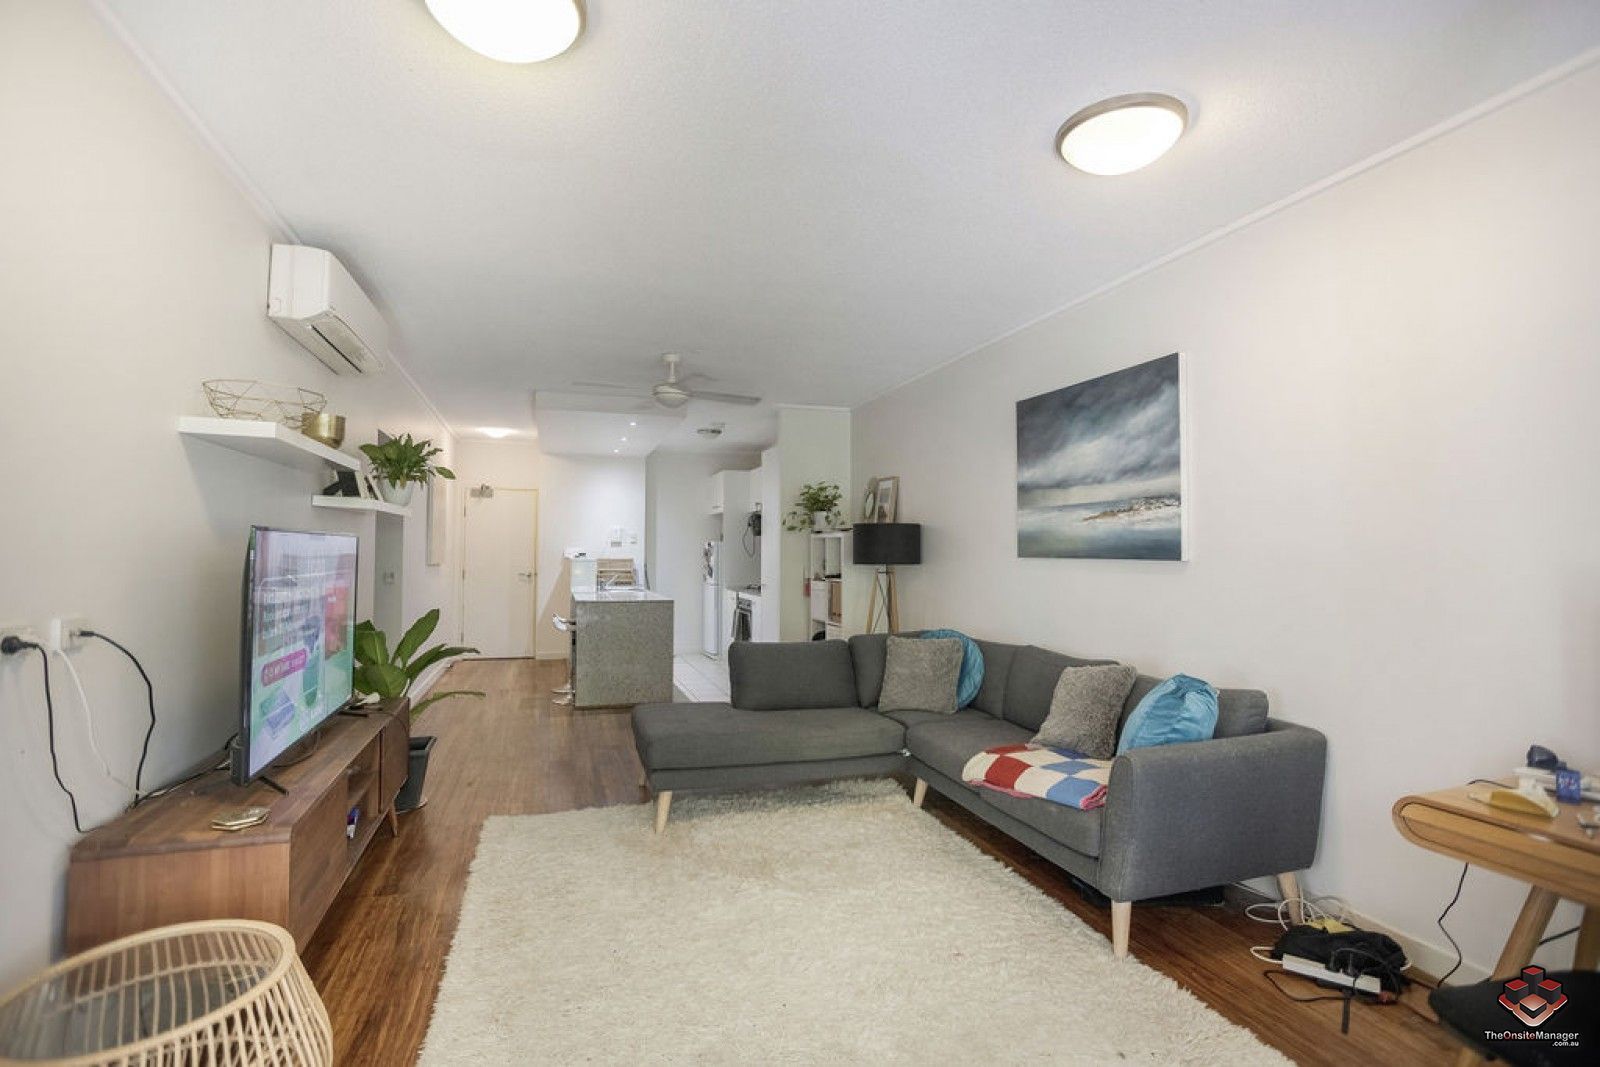 2 bedrooms Apartment / Unit / Flat in ID:21127854/71 Beeston Street TENERIFFE QLD, 4005